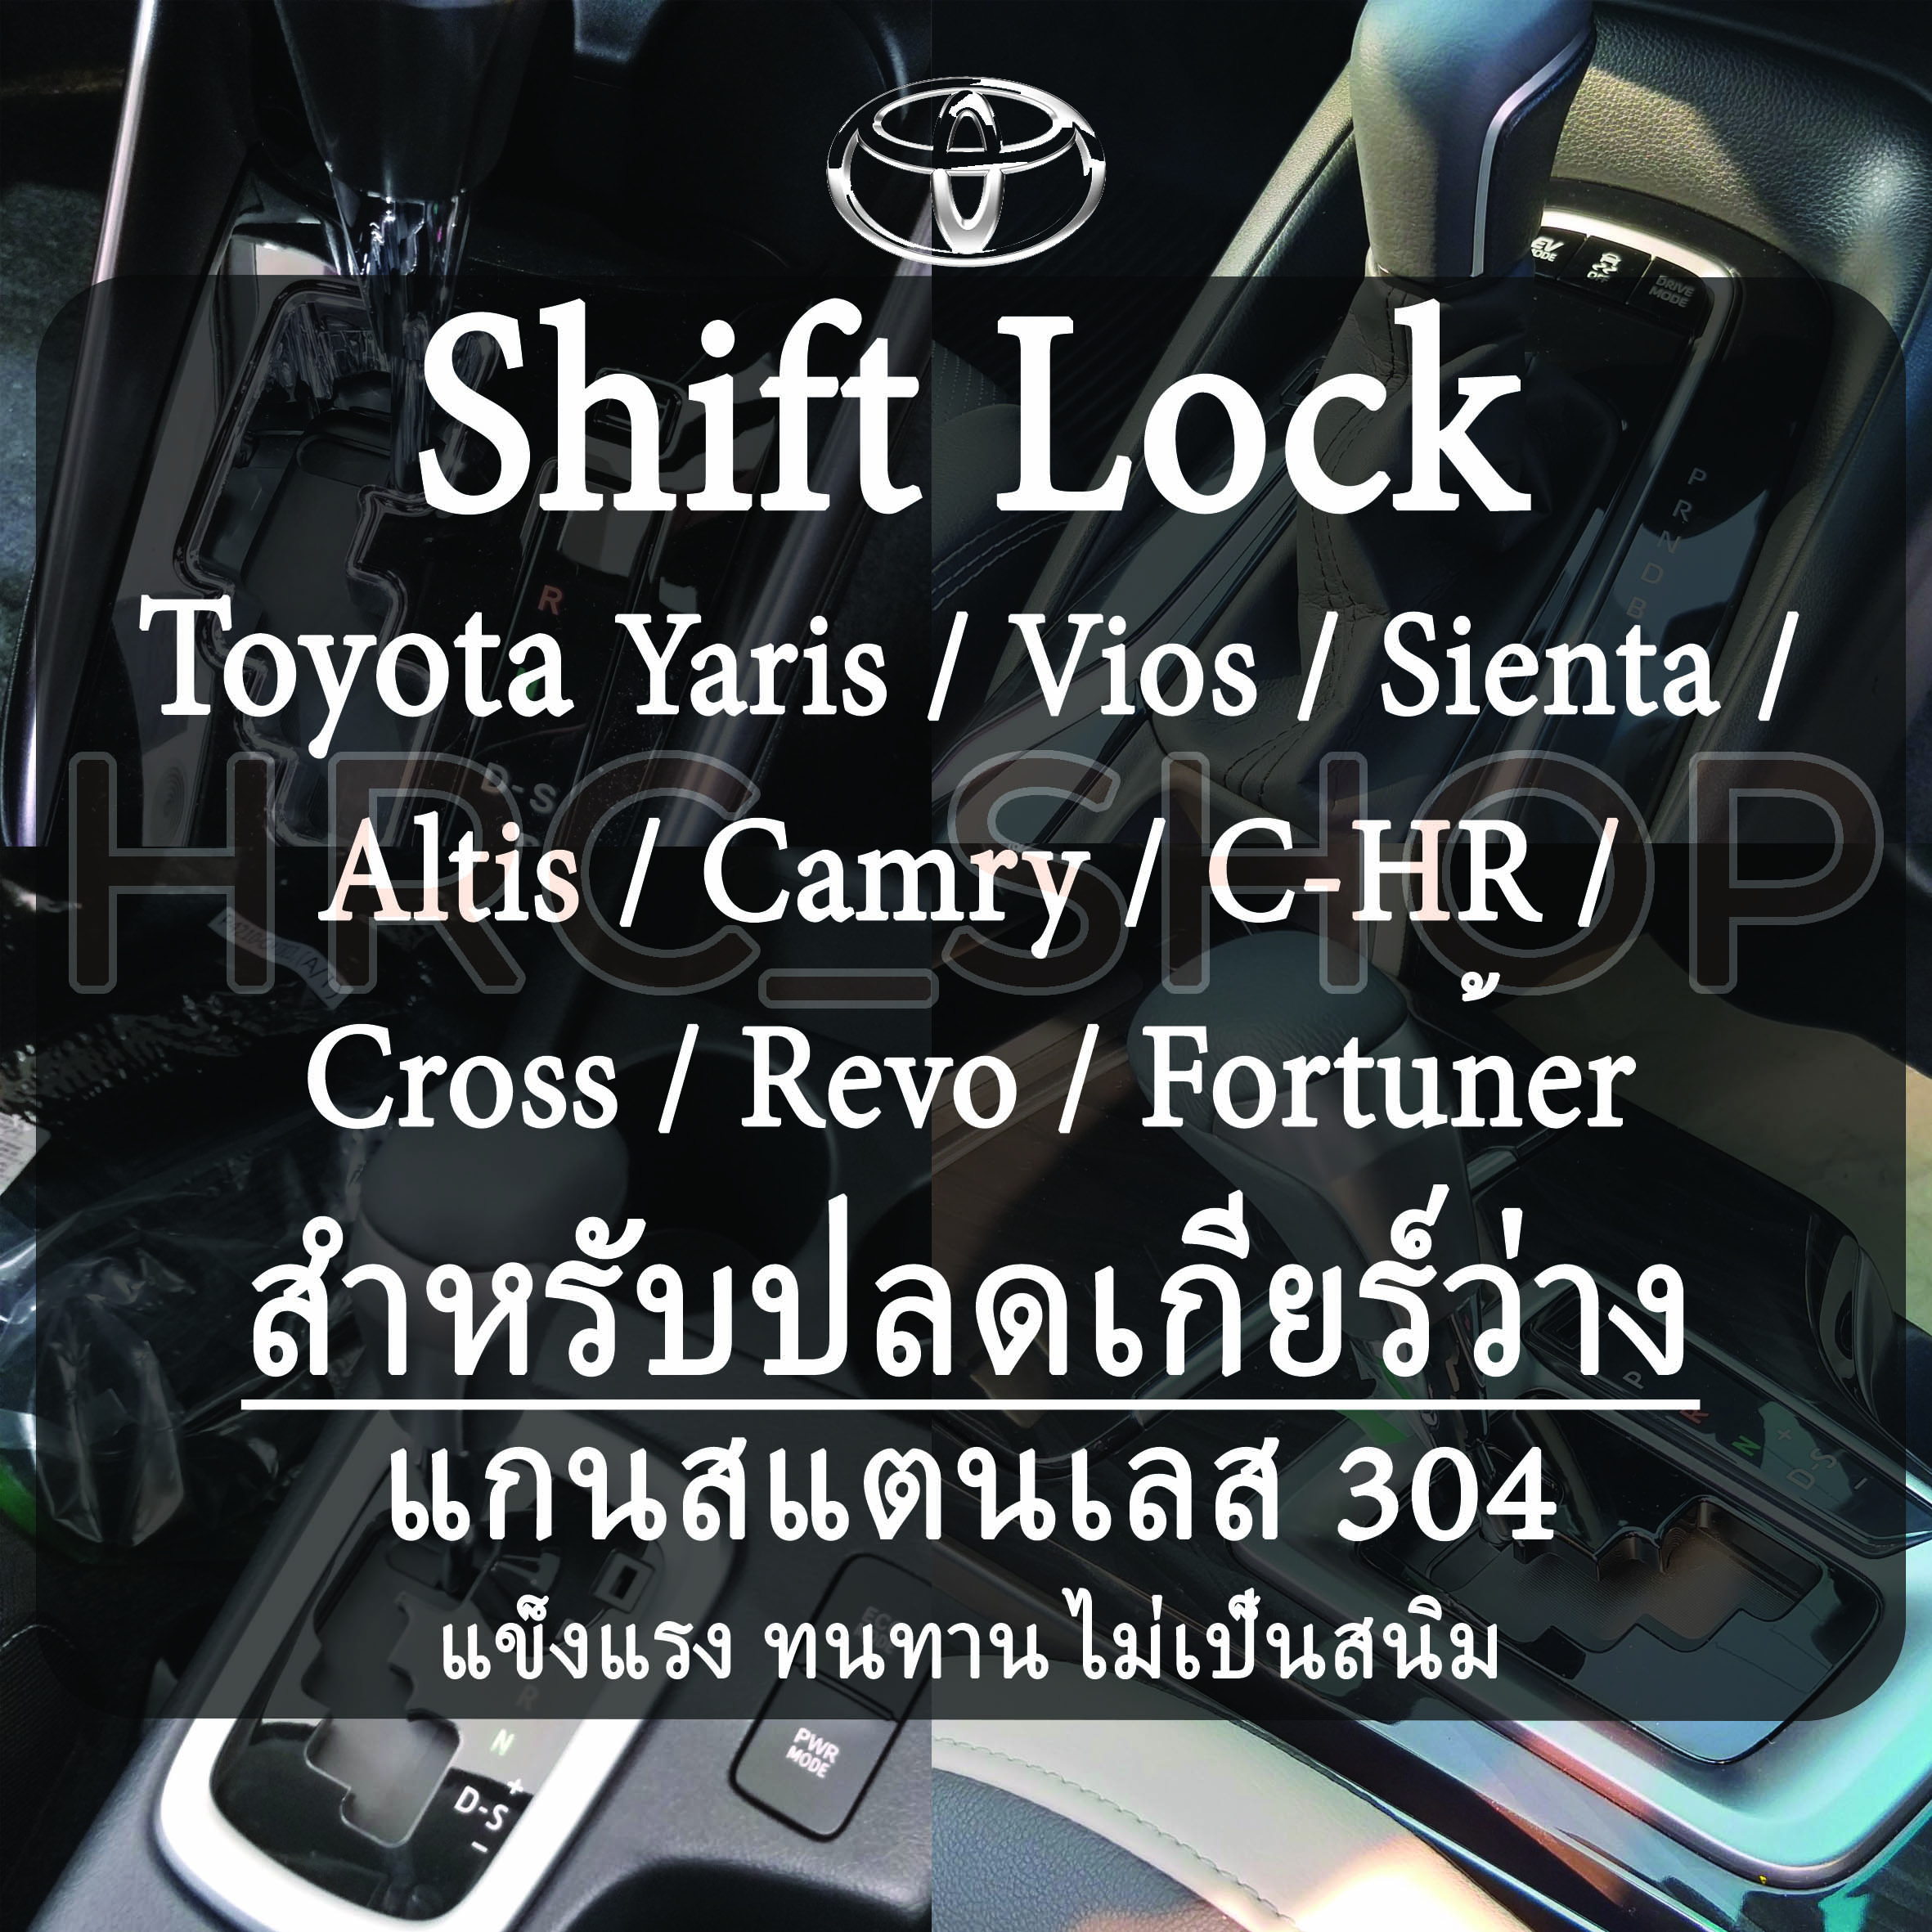 Shift Lock Toyota Yaris/ Altis / Sienta / Camry / Revo / Fortuner / Cross แกนสแตนเลส 304 สำหรับปลดเกียร์ว่าง